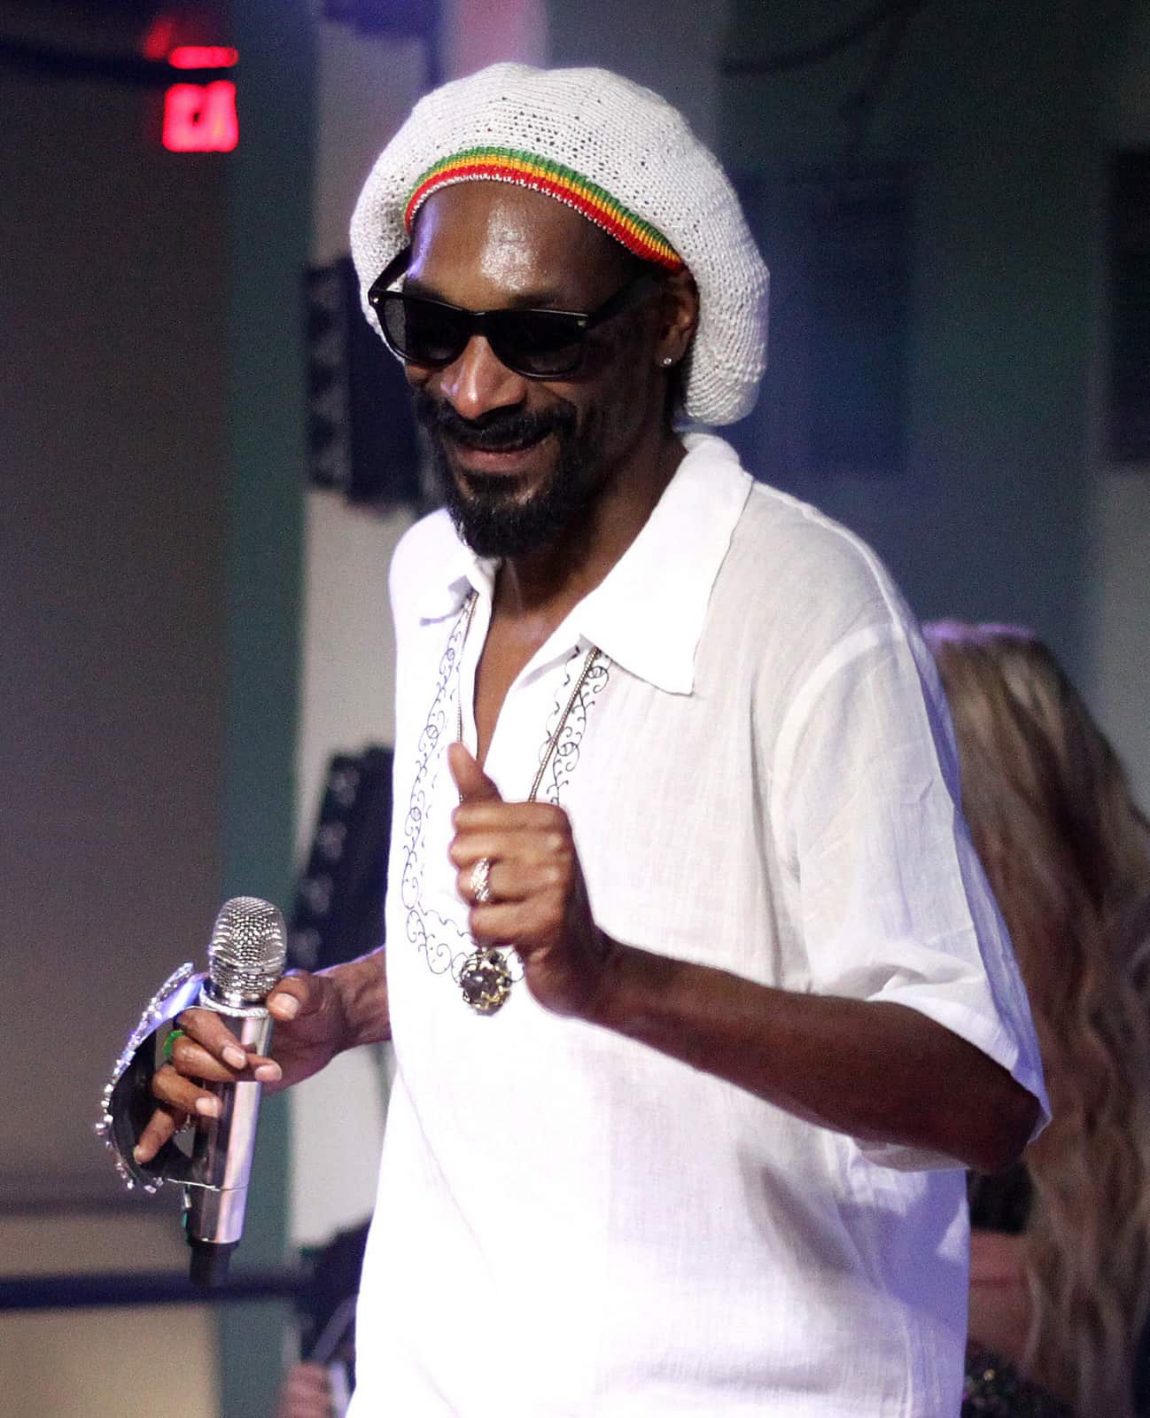 Snoop Dogg 2012 2018031115 5aa546199df49